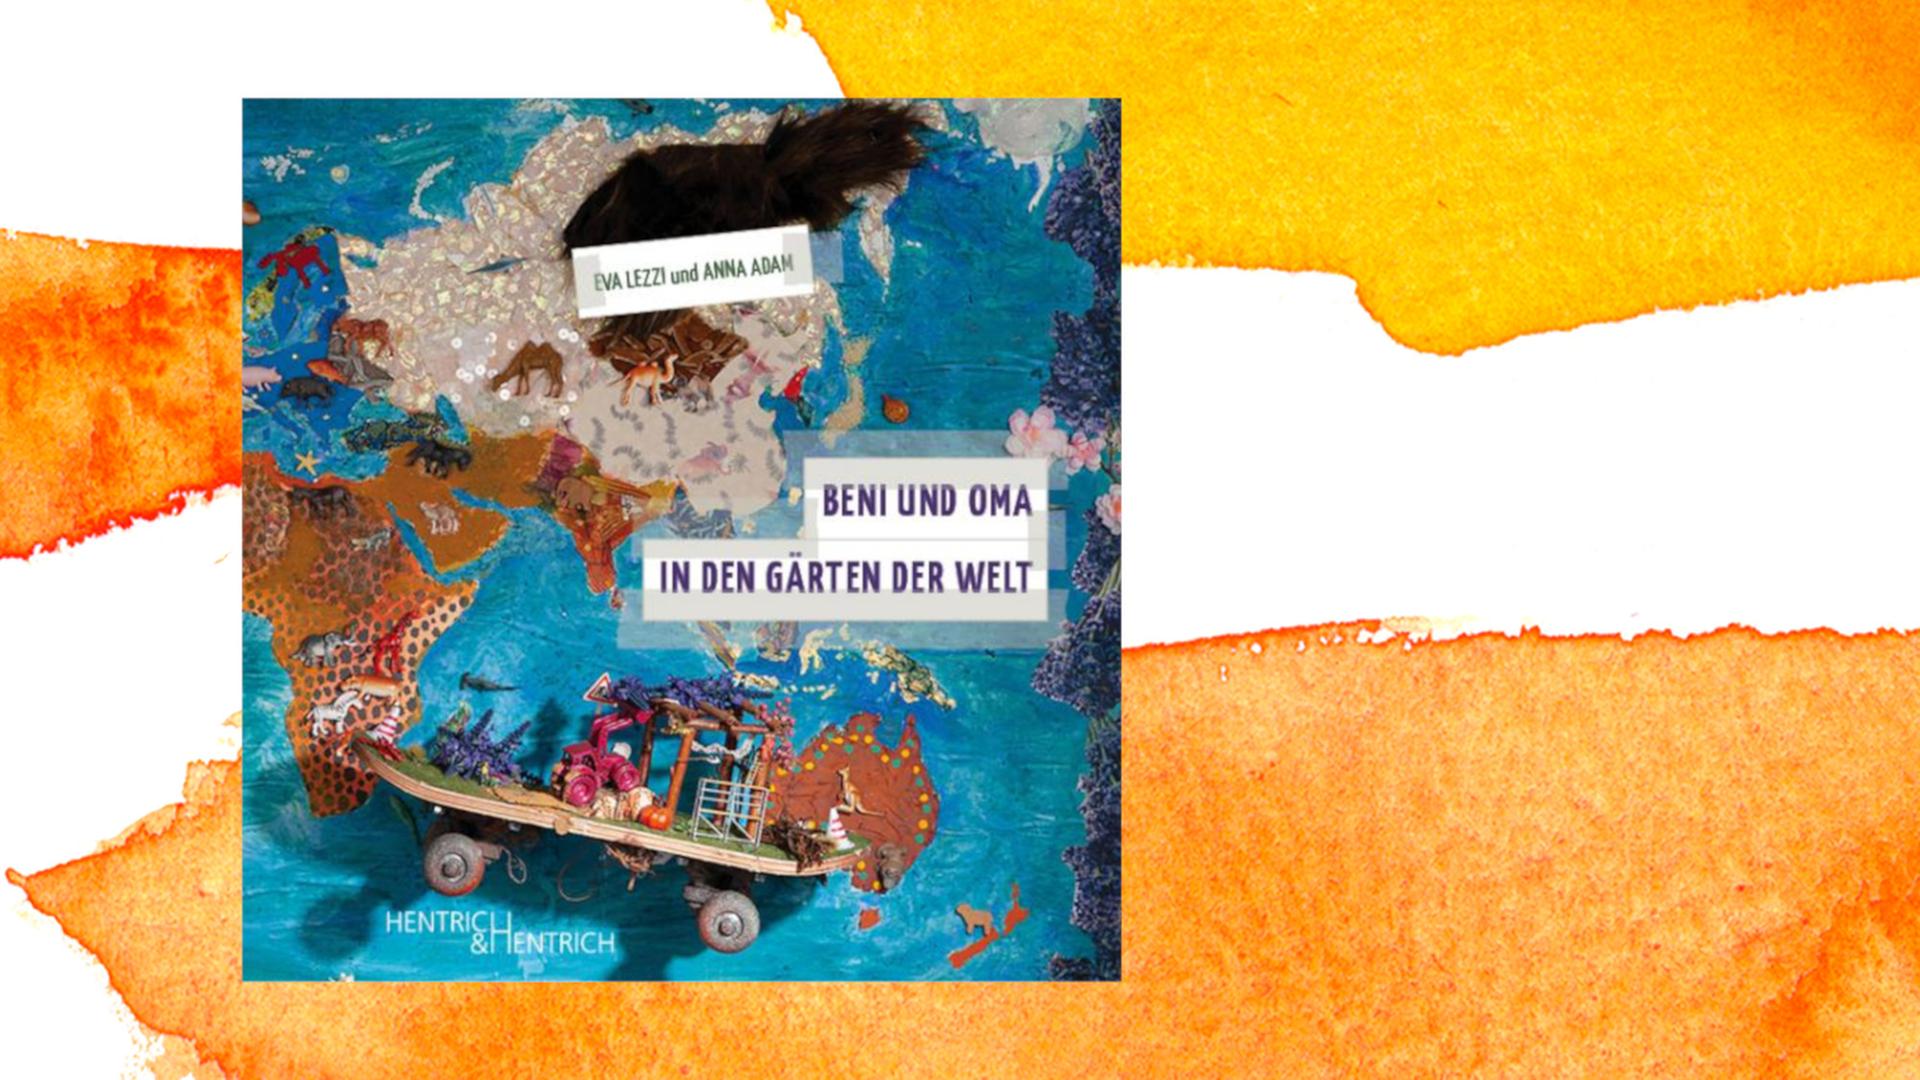 Der Umschlag von Anna Adams und Eva Lezzis Kinderbuch "Beni und Oma in den Gärten der Welt" zeigt eine Materialcollage, auf der u.a. die Umrisse der Kontinente, viele Tiere und ein Skateboard zu sehen sind.